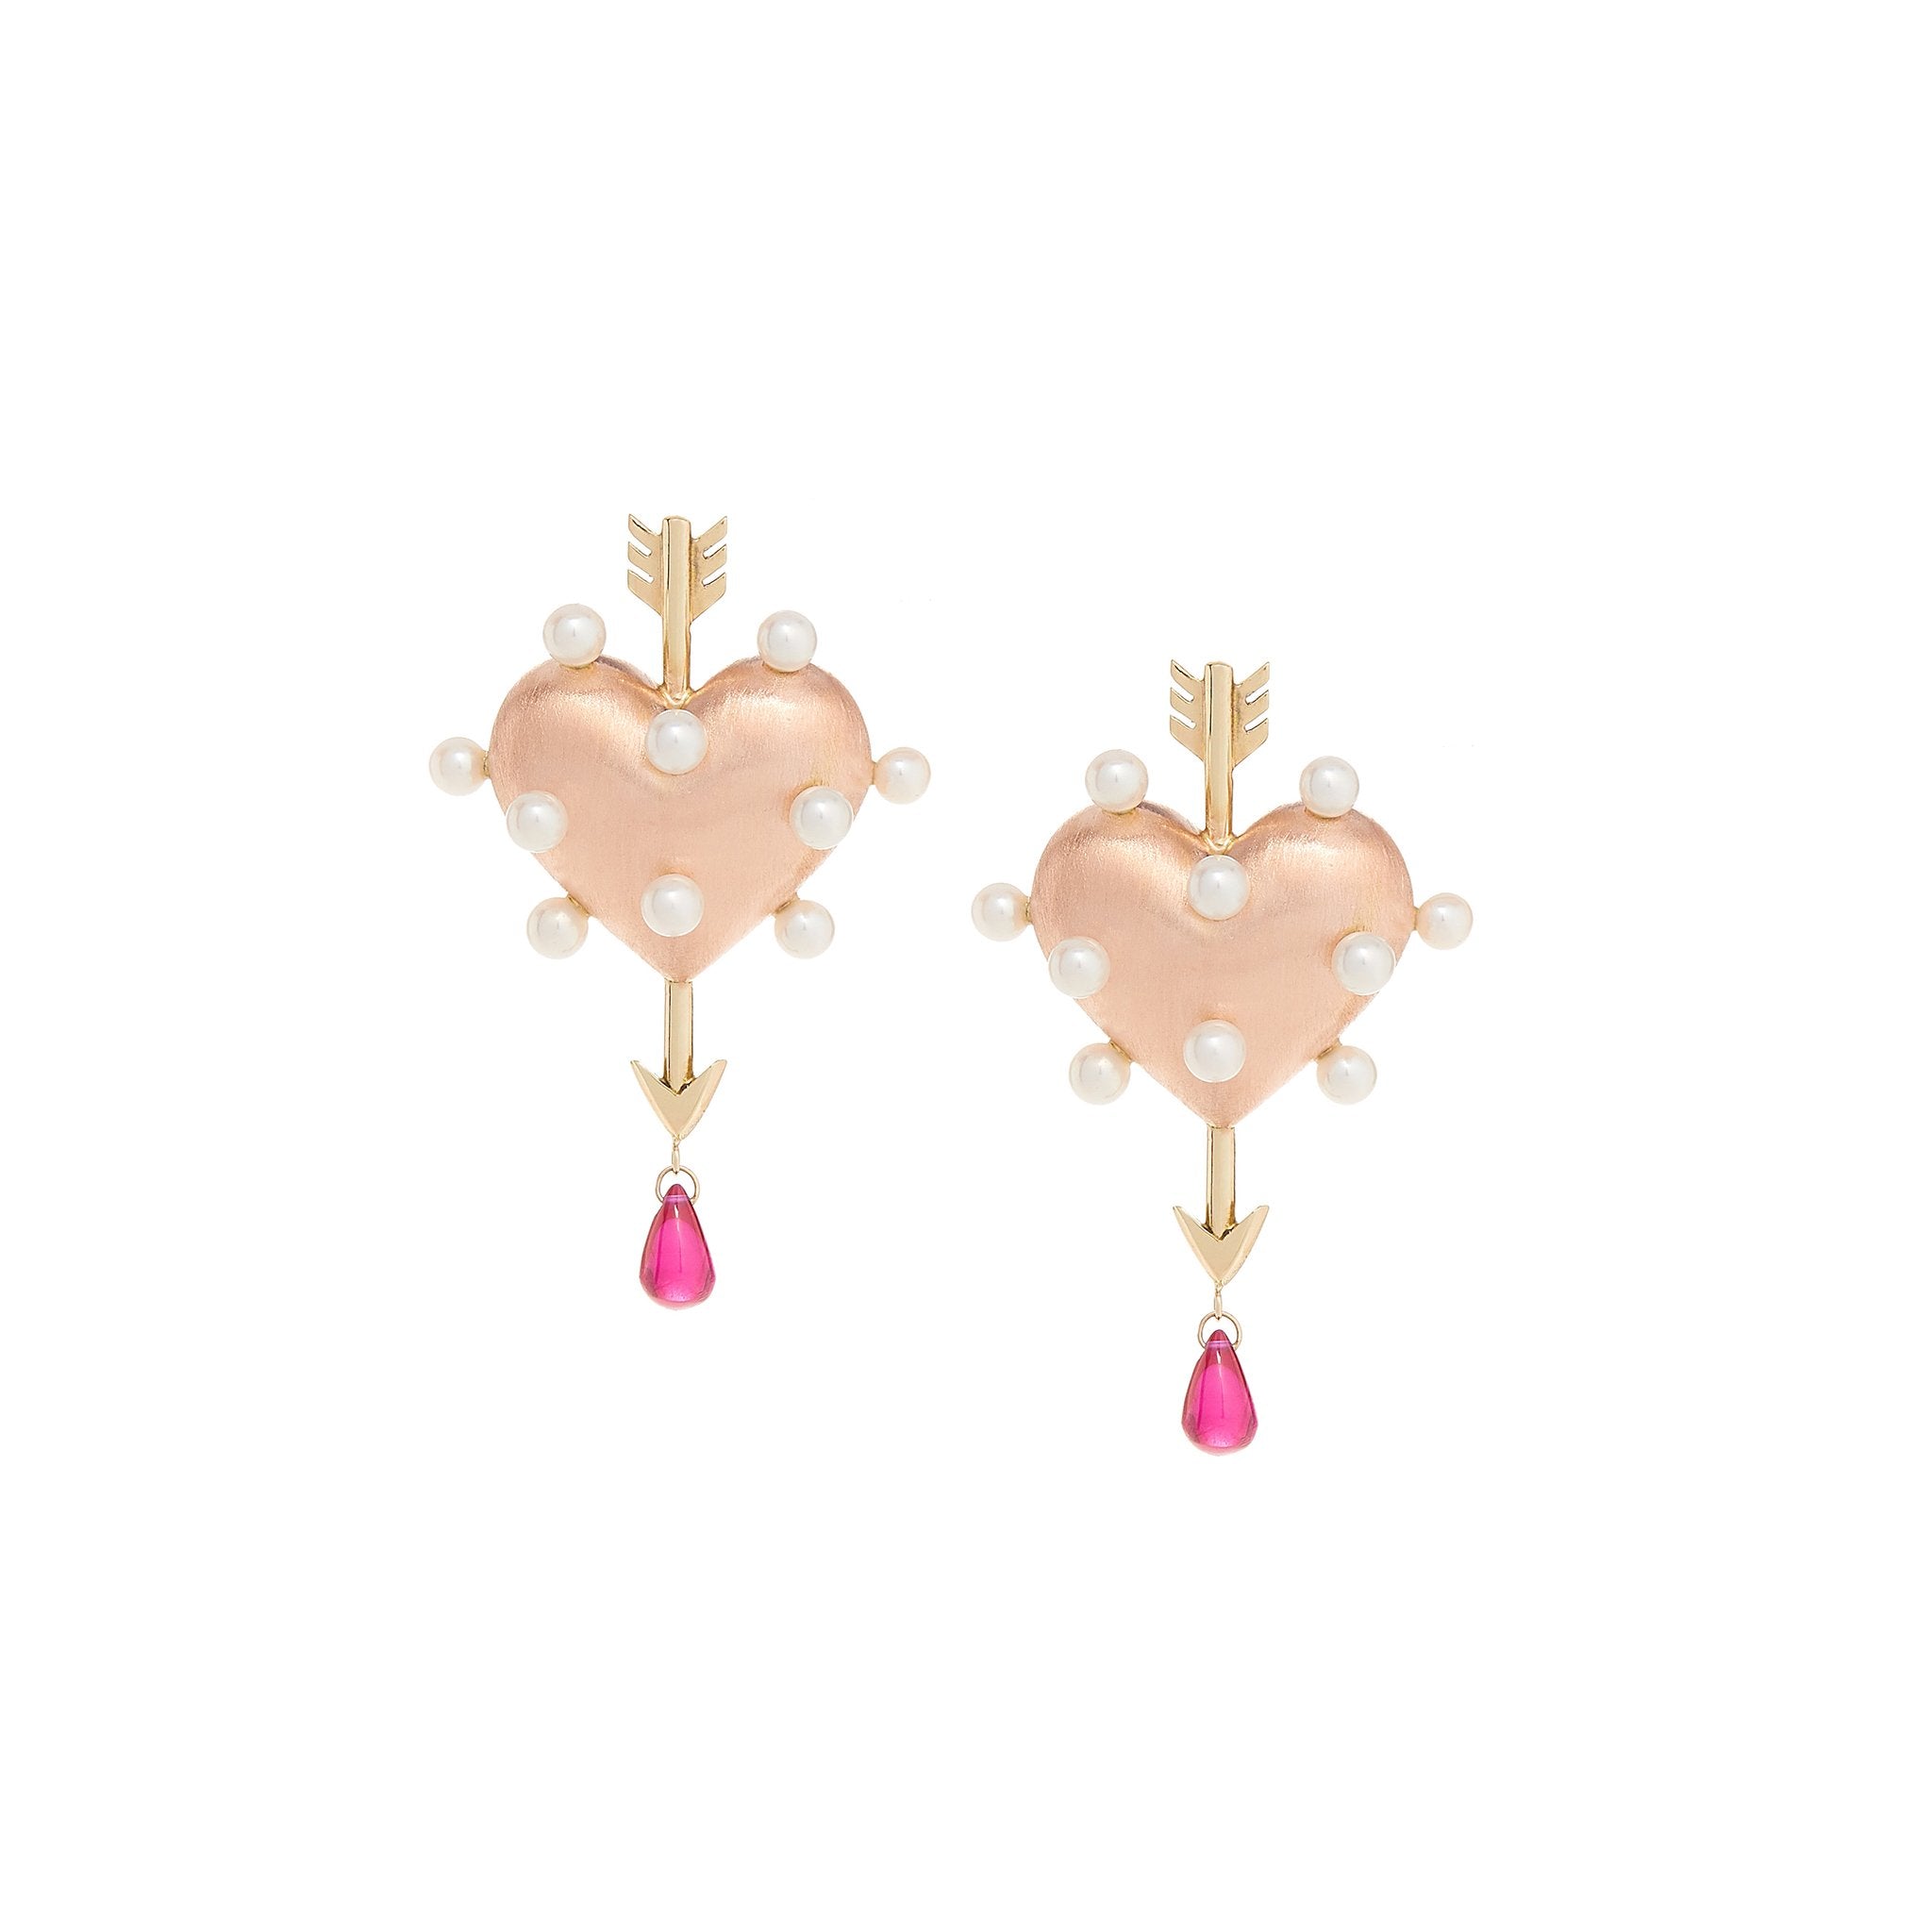 LV Heart Earrings in Pink